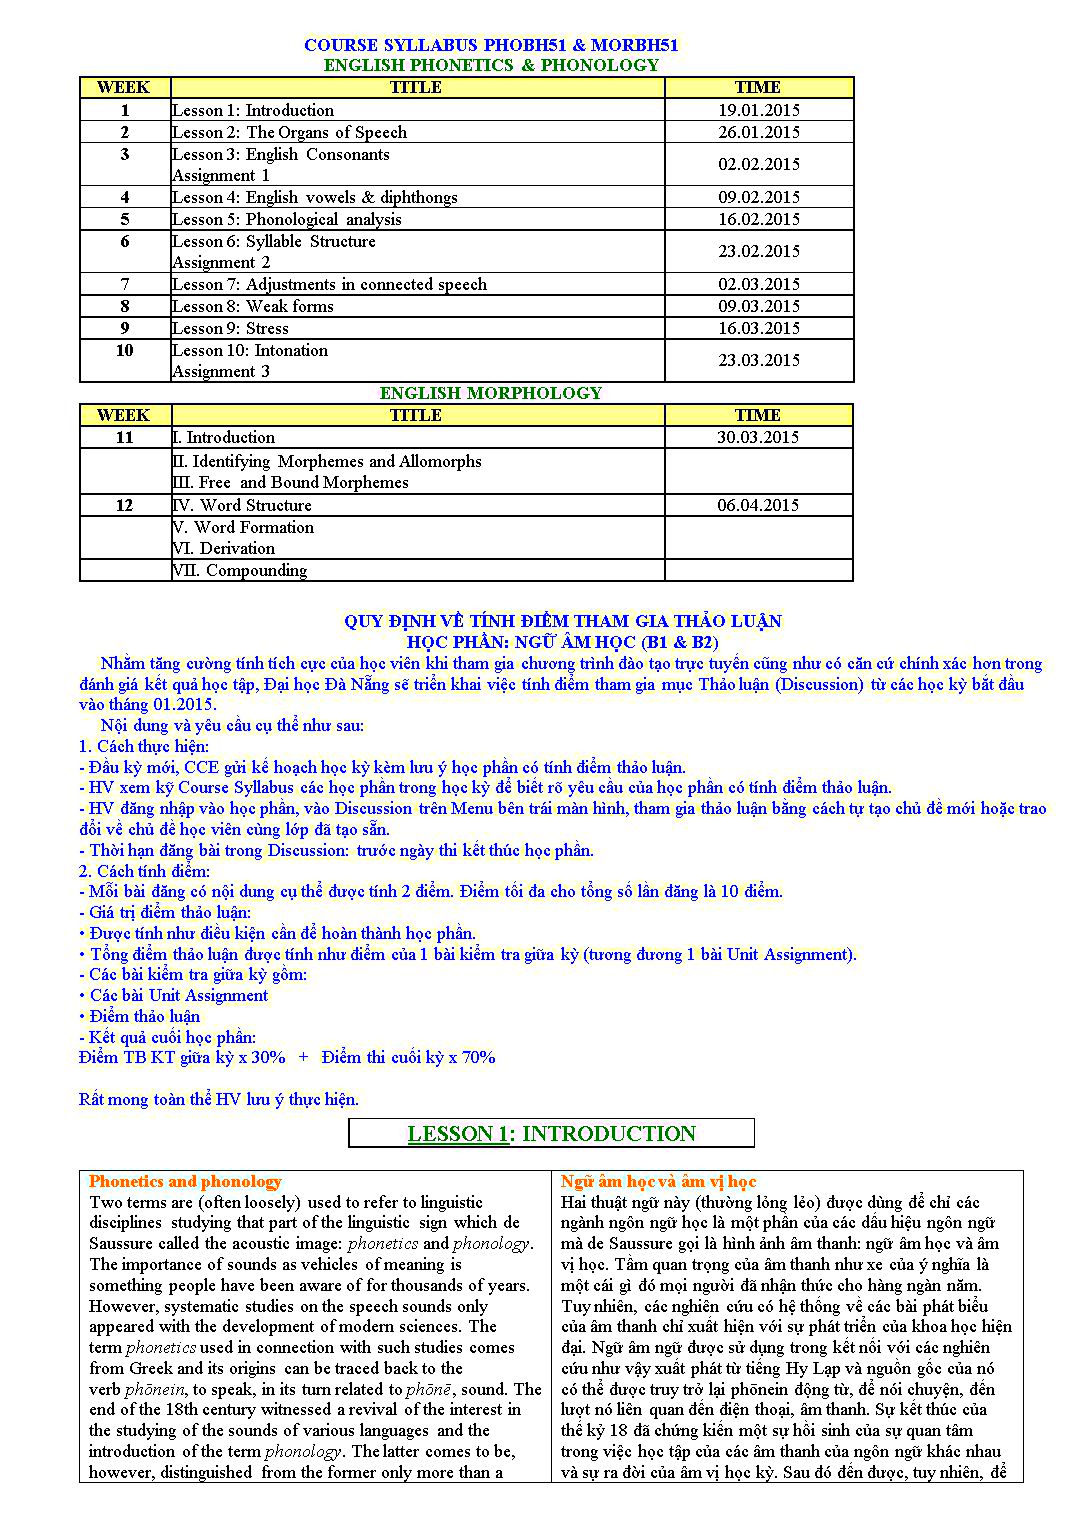 Tài liệu học phần Ngữ âm học (B1 & B2) trang 1